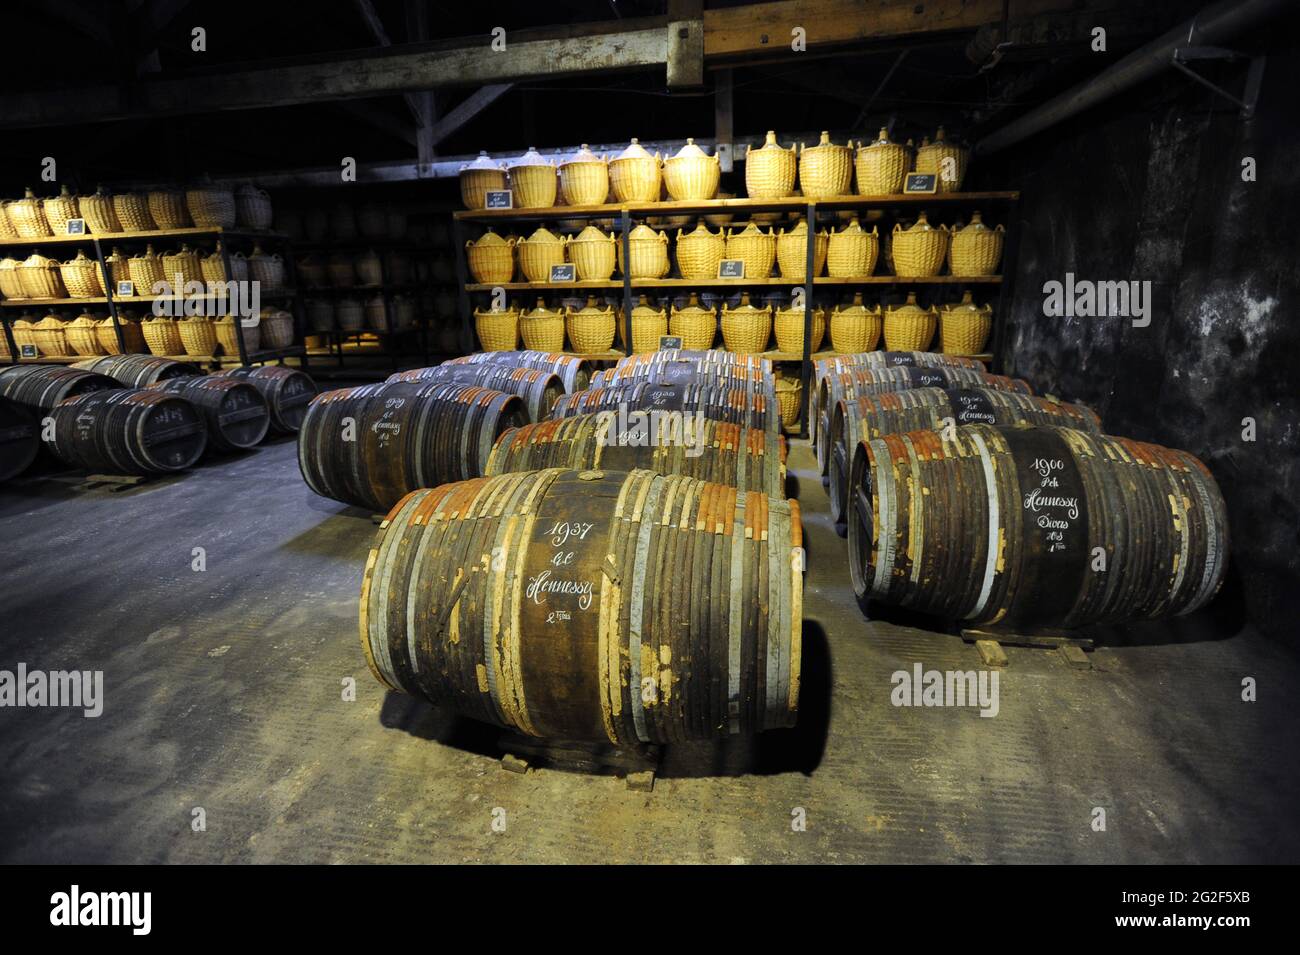 Barrels of Hennessy Cognac, Cognac, Poitou-Charentes, France Stock Photo